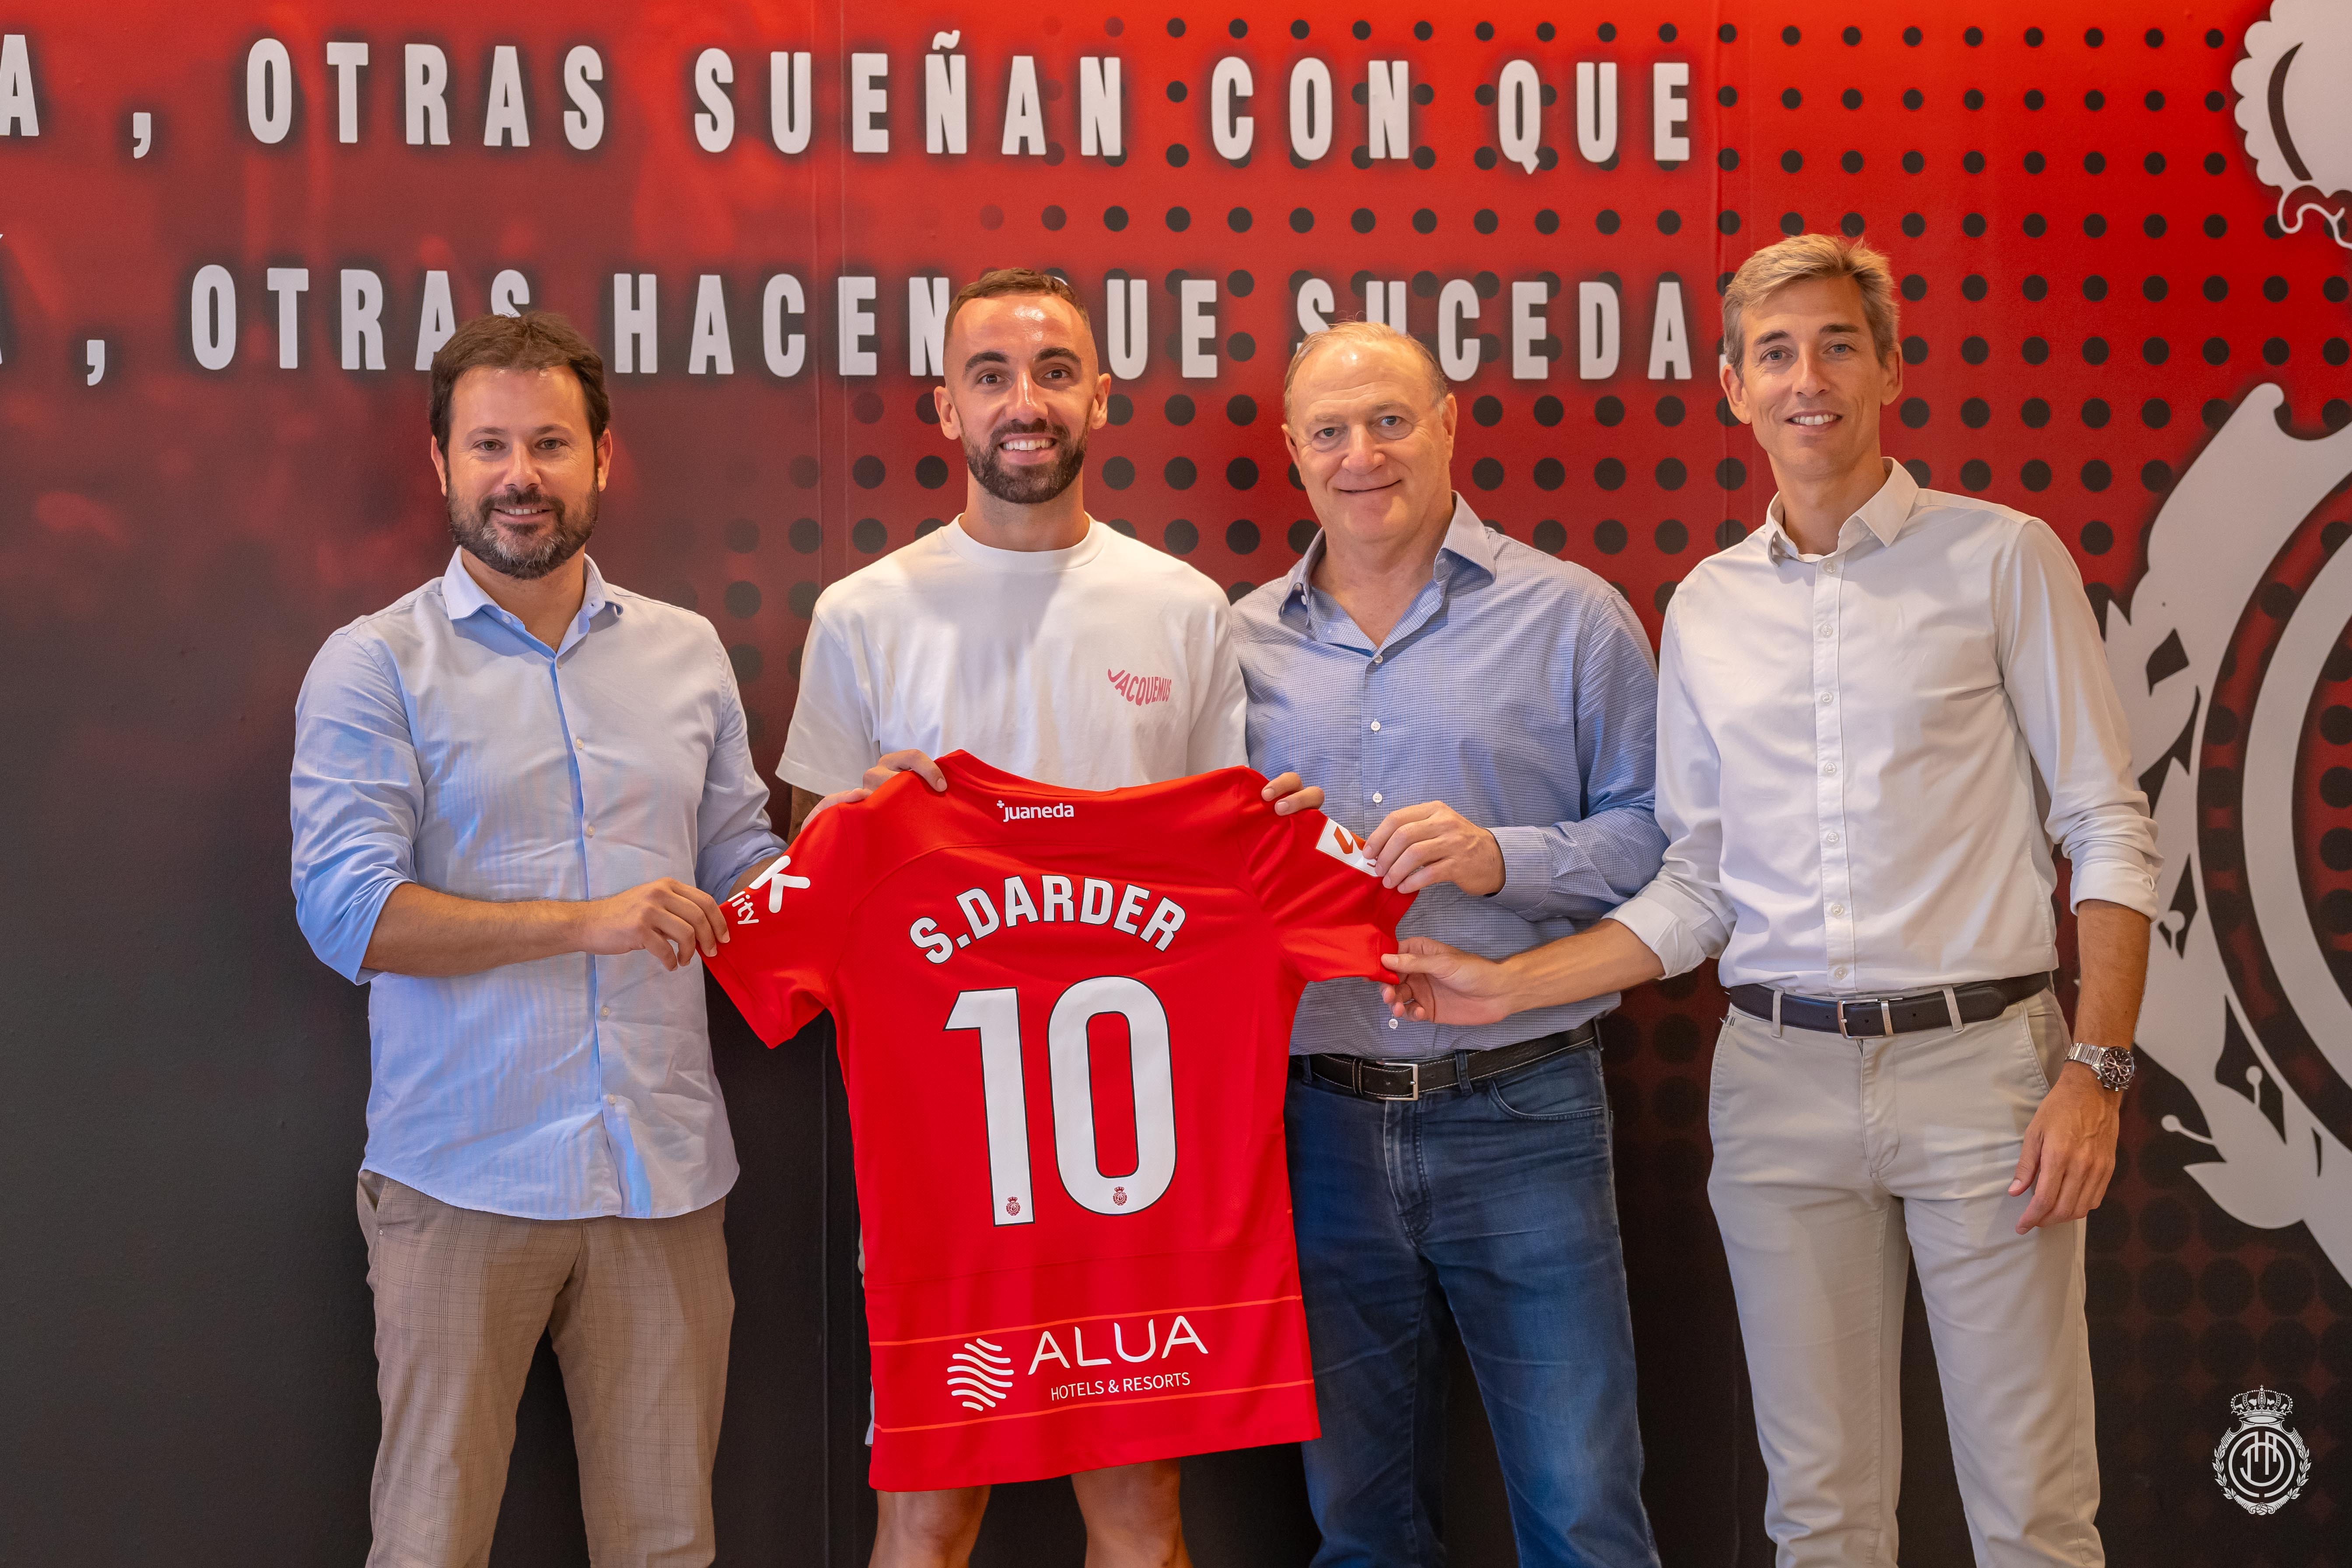 Mallorca assina com Sergi Darder, do Espanyol, até 2028 - Folha PE